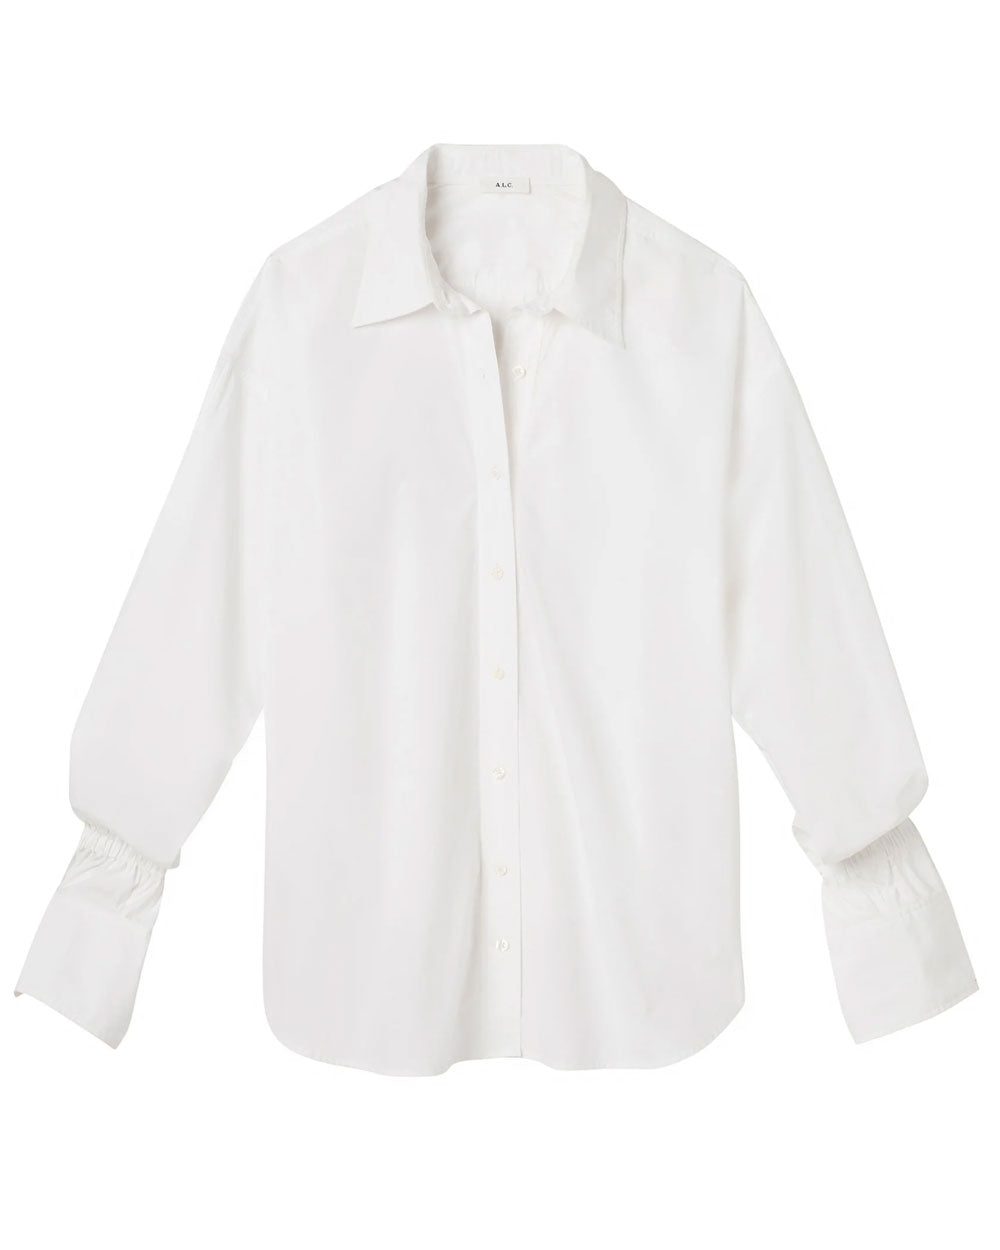 White Monica Shirt